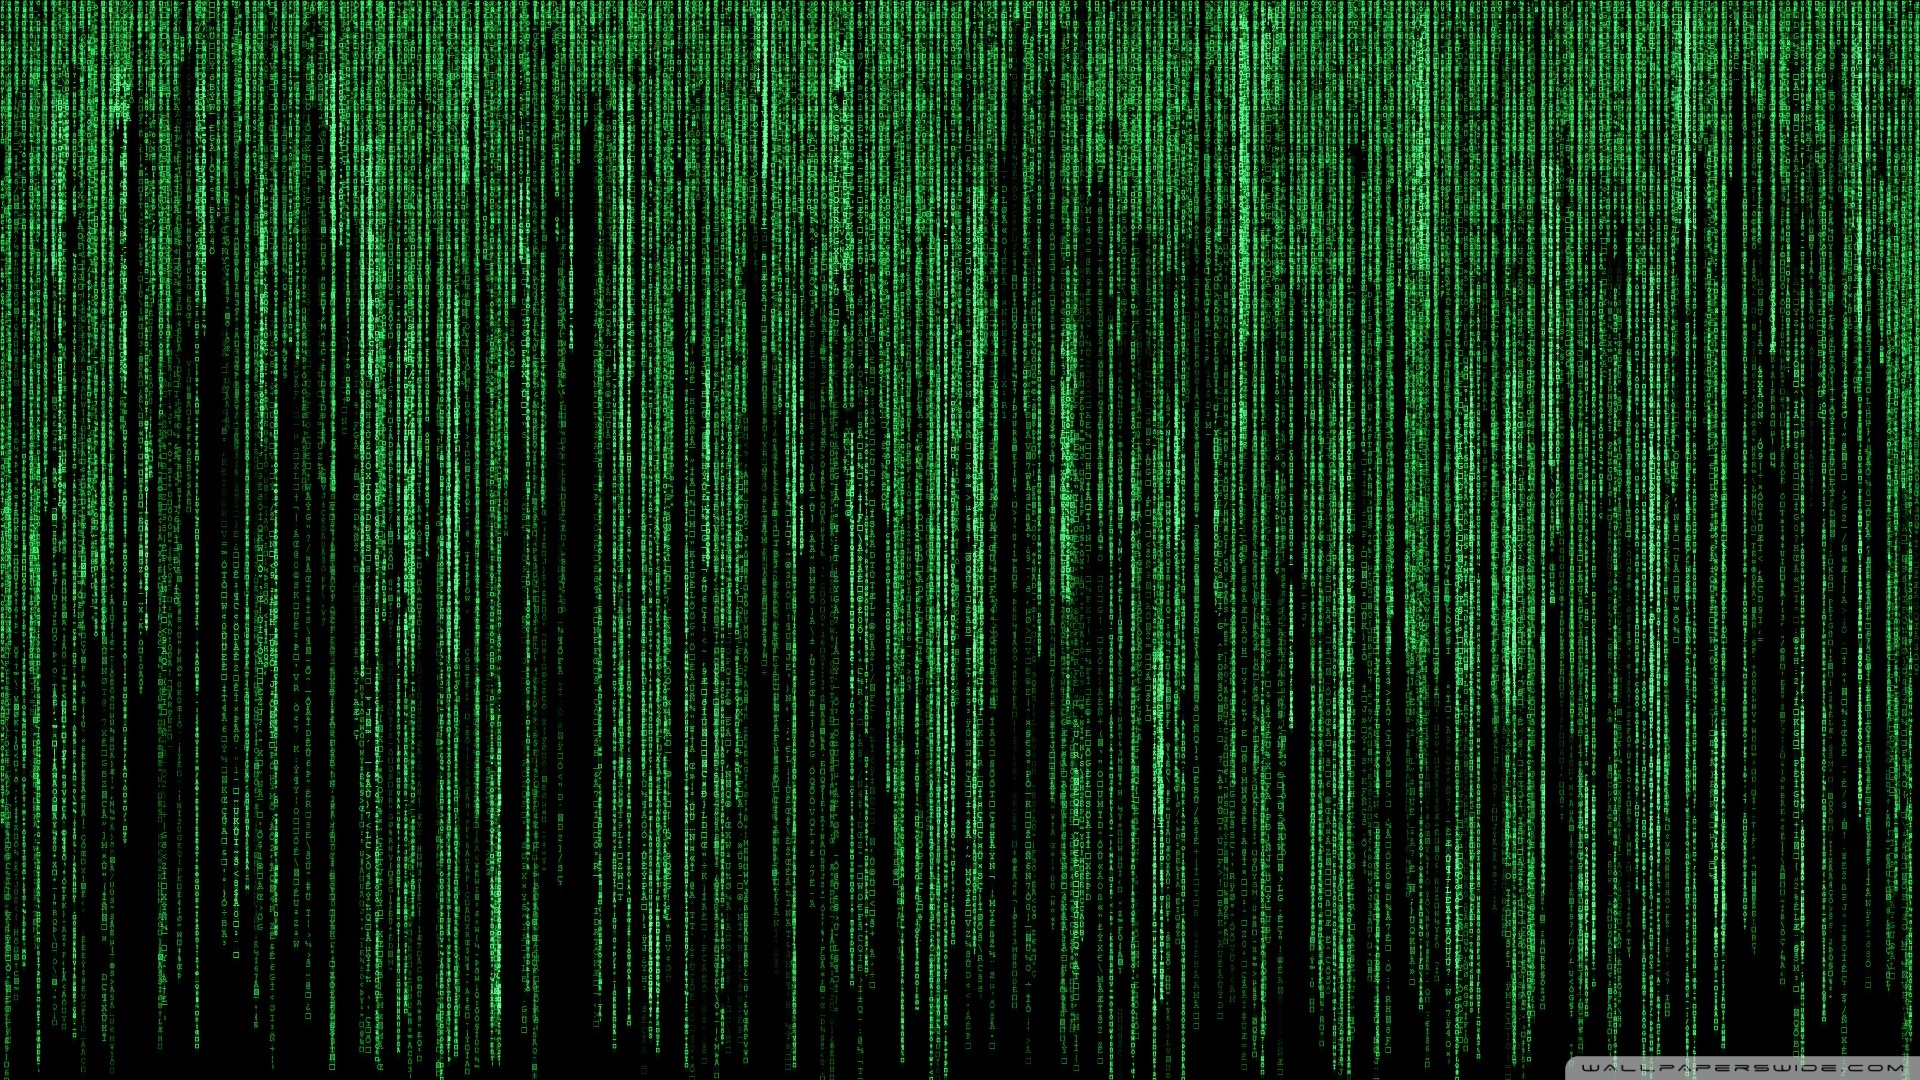 Популярные заставки и фоны Матрица (Matrix) на компьютер